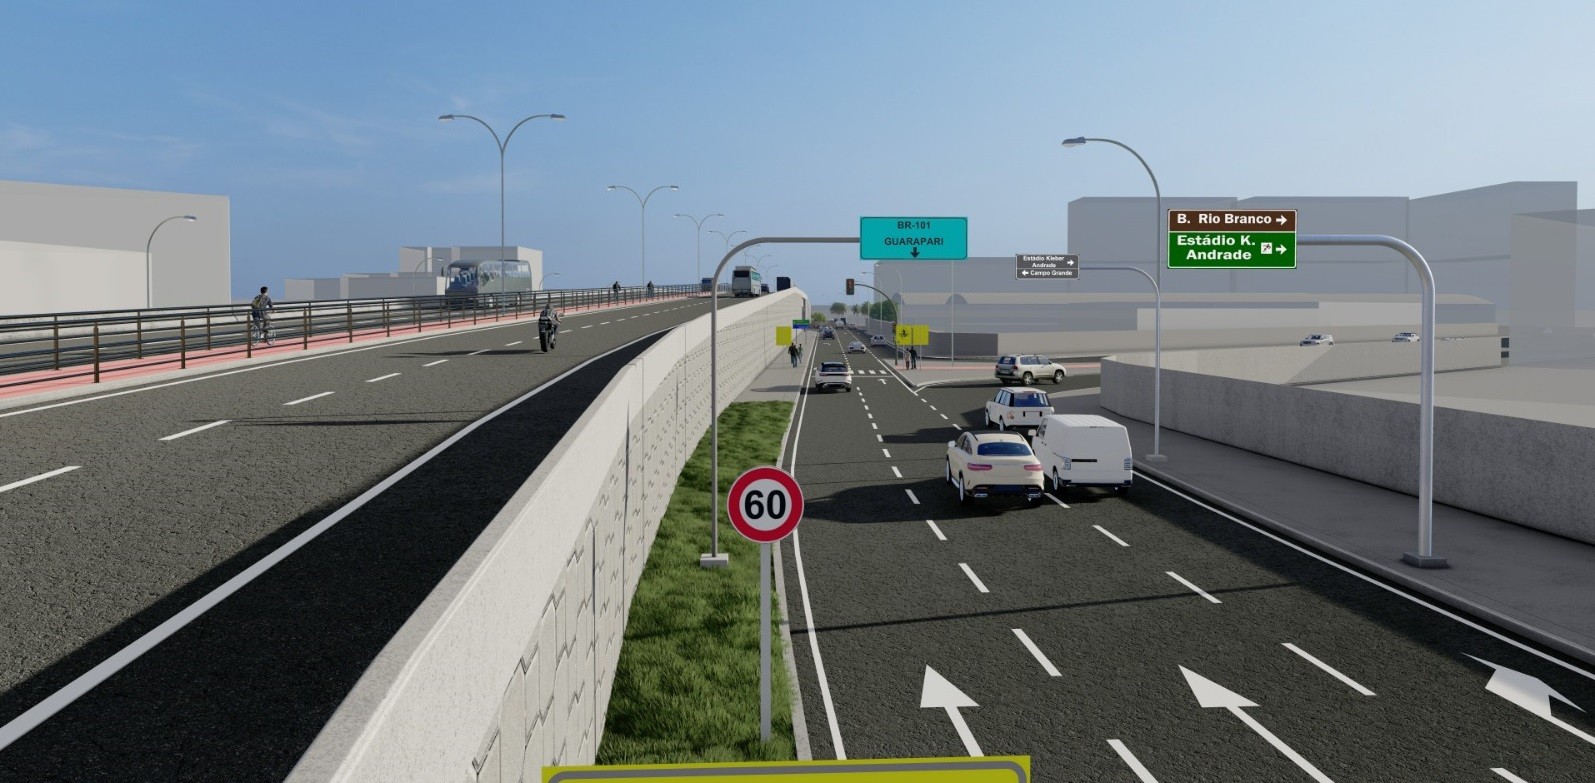 FOTOS: Viaduto de Cariacica, no ES, começa a ser construído; confira como fica o trânsito no local